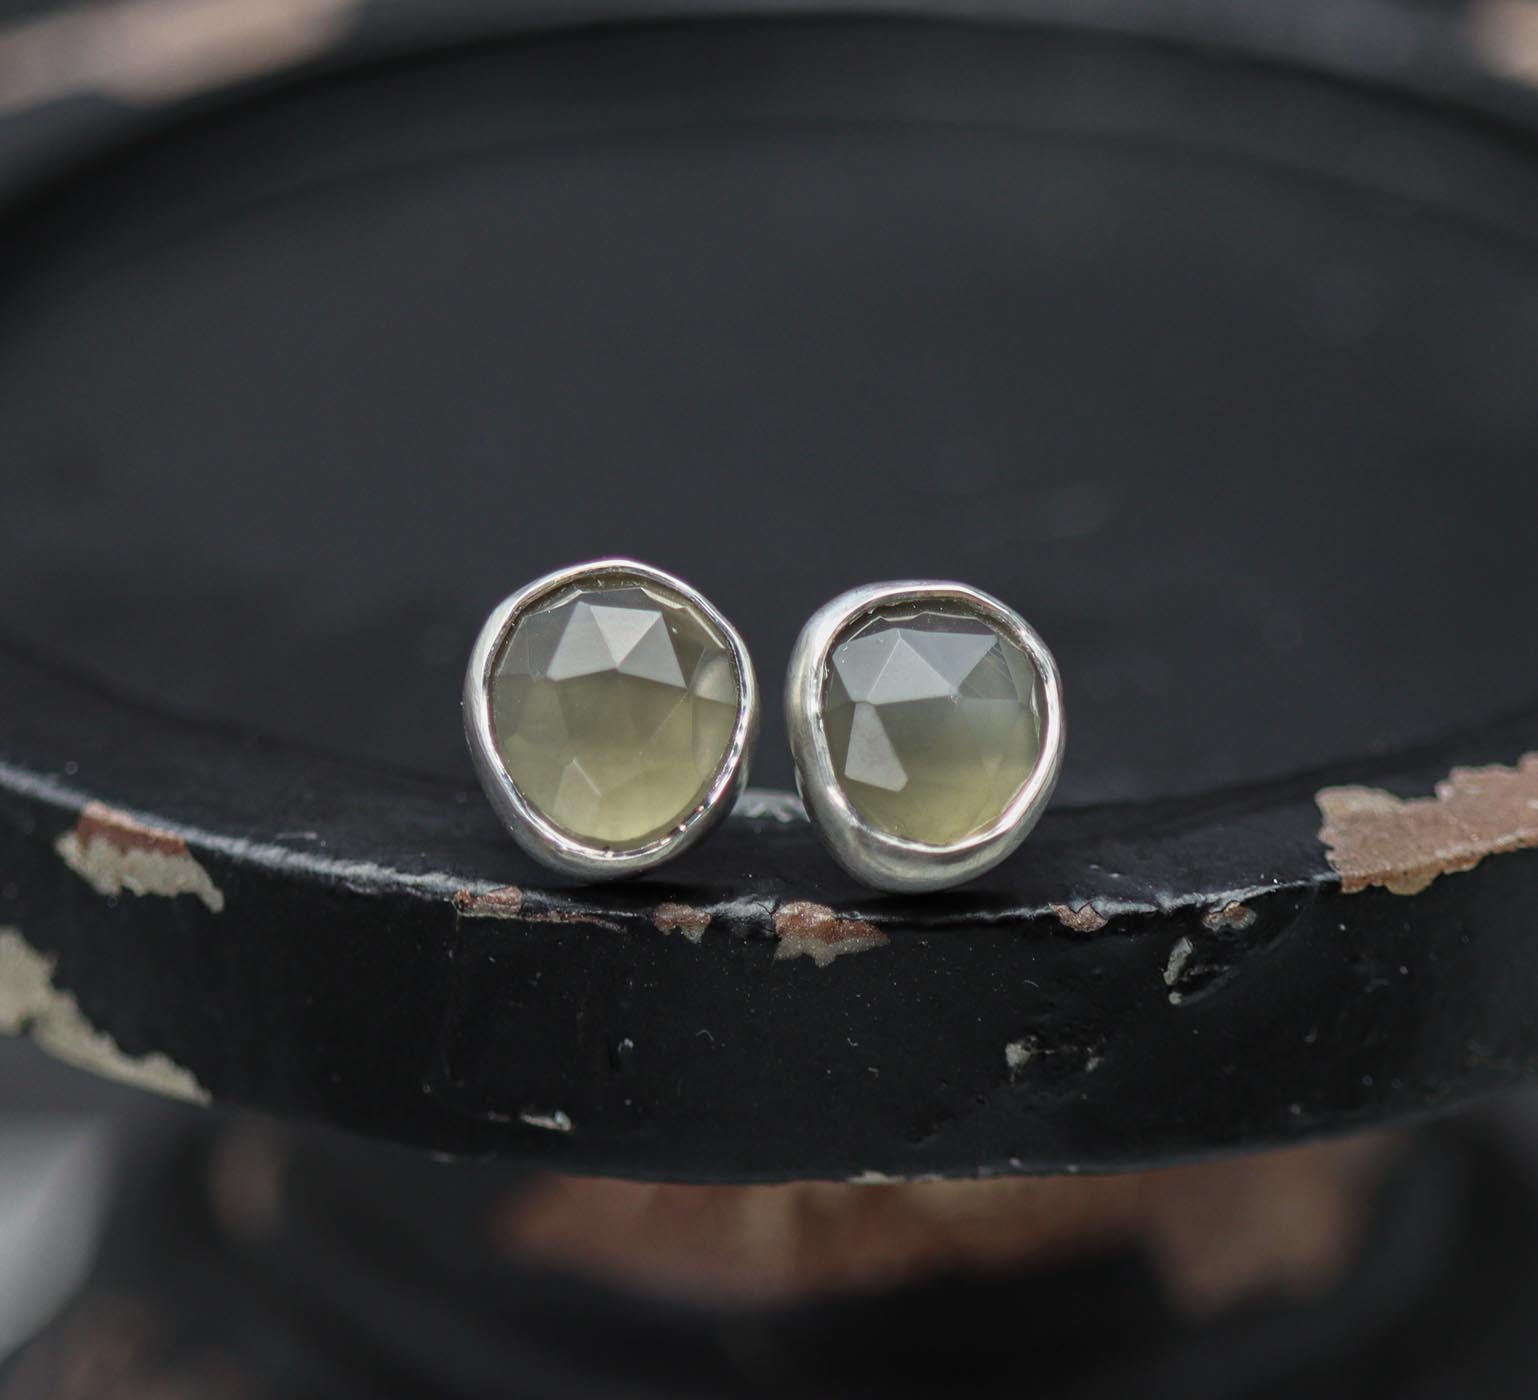 Grey Moonstone Stud Earrings Sterling Silver